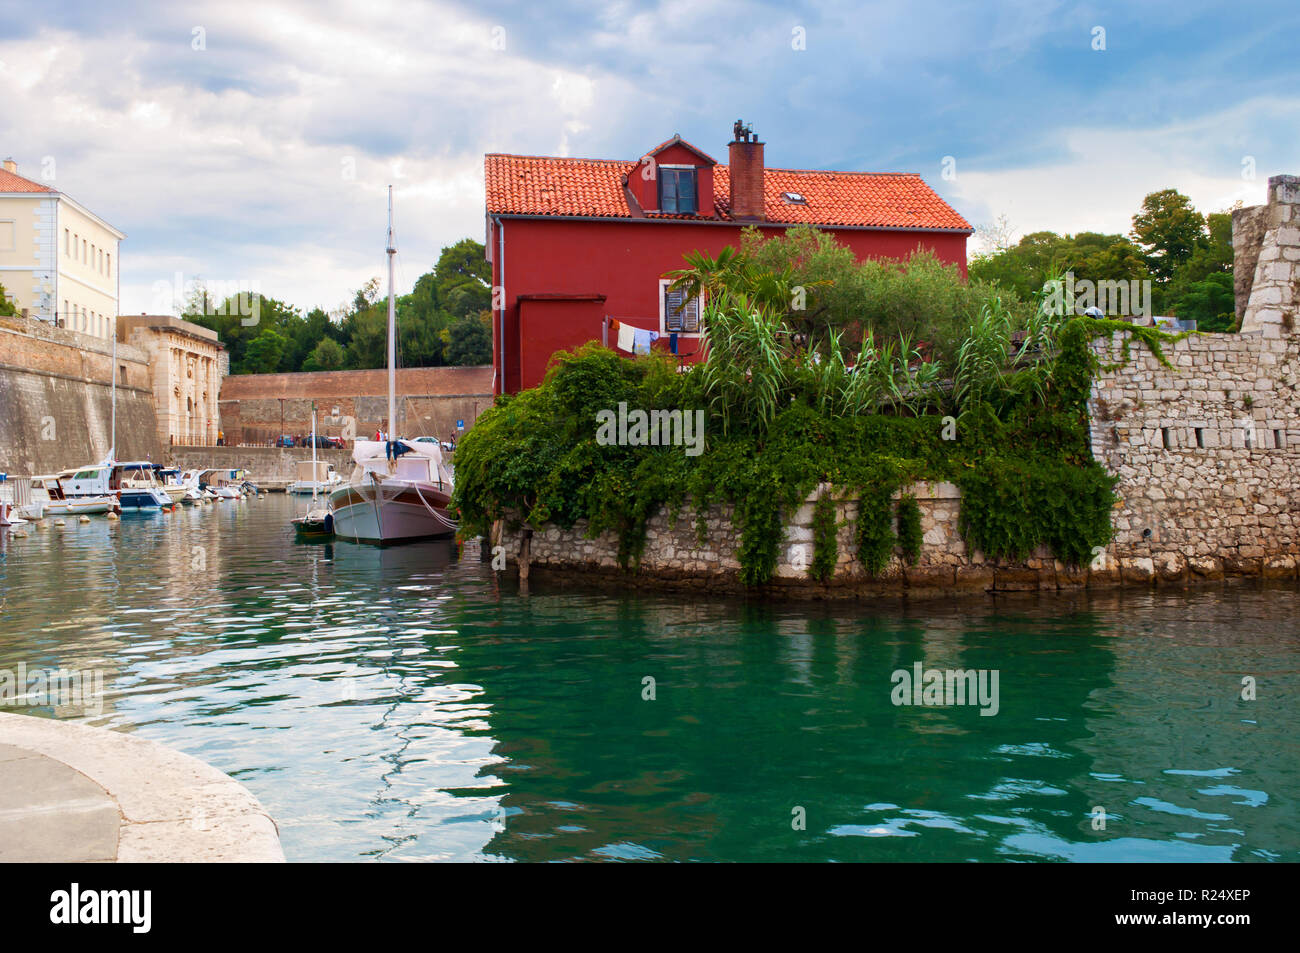 Gemütliche malerische Stadt Zadar, Kroatien. Rotes Haus unter grünen Efeu Laub in der Nähe von Emerald Wasser wo Boote und Yachten schweben. Dramatische bewölkt Mor Stockfoto